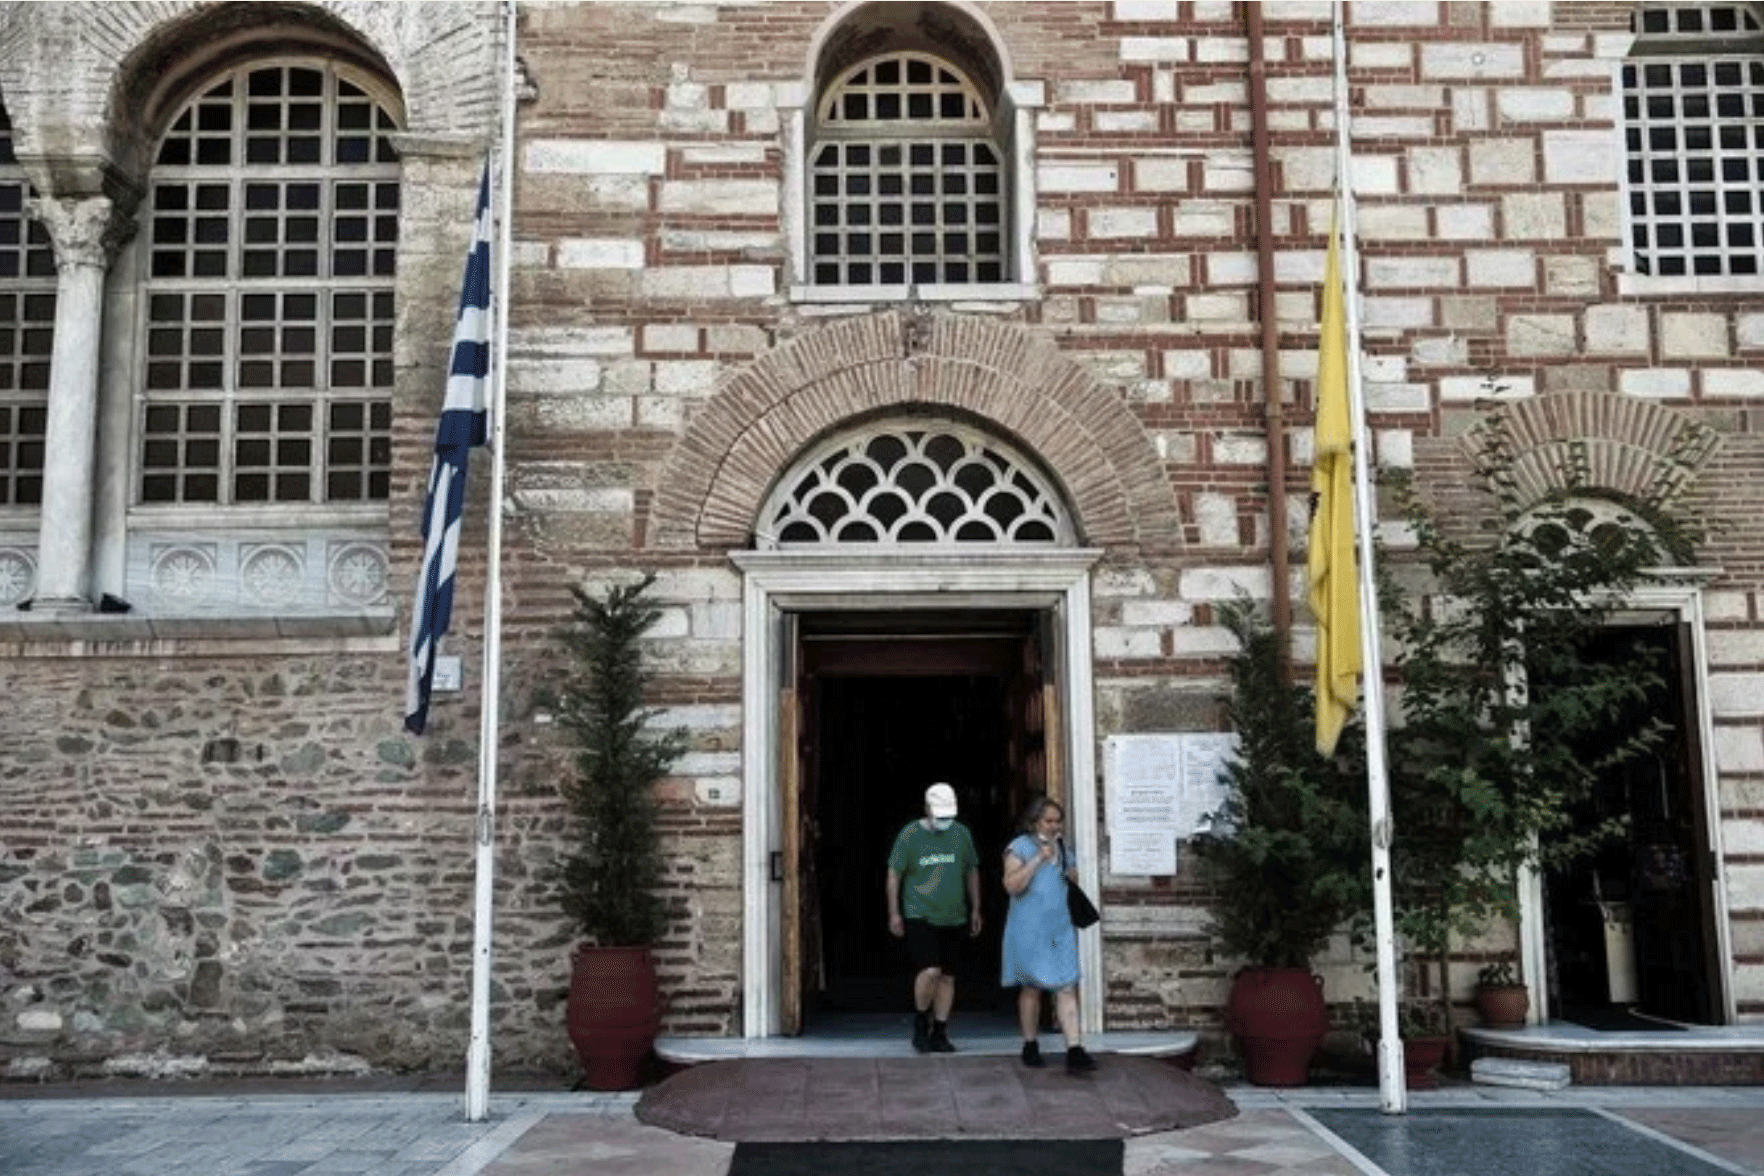 مصليان يغادران كنيسة في تسالونيكي يوم 24 يوليو 2020، وتبدو الأعلام منكسة كفعل احتجاج على تحويل آيا صوفيا إلى مسجد 